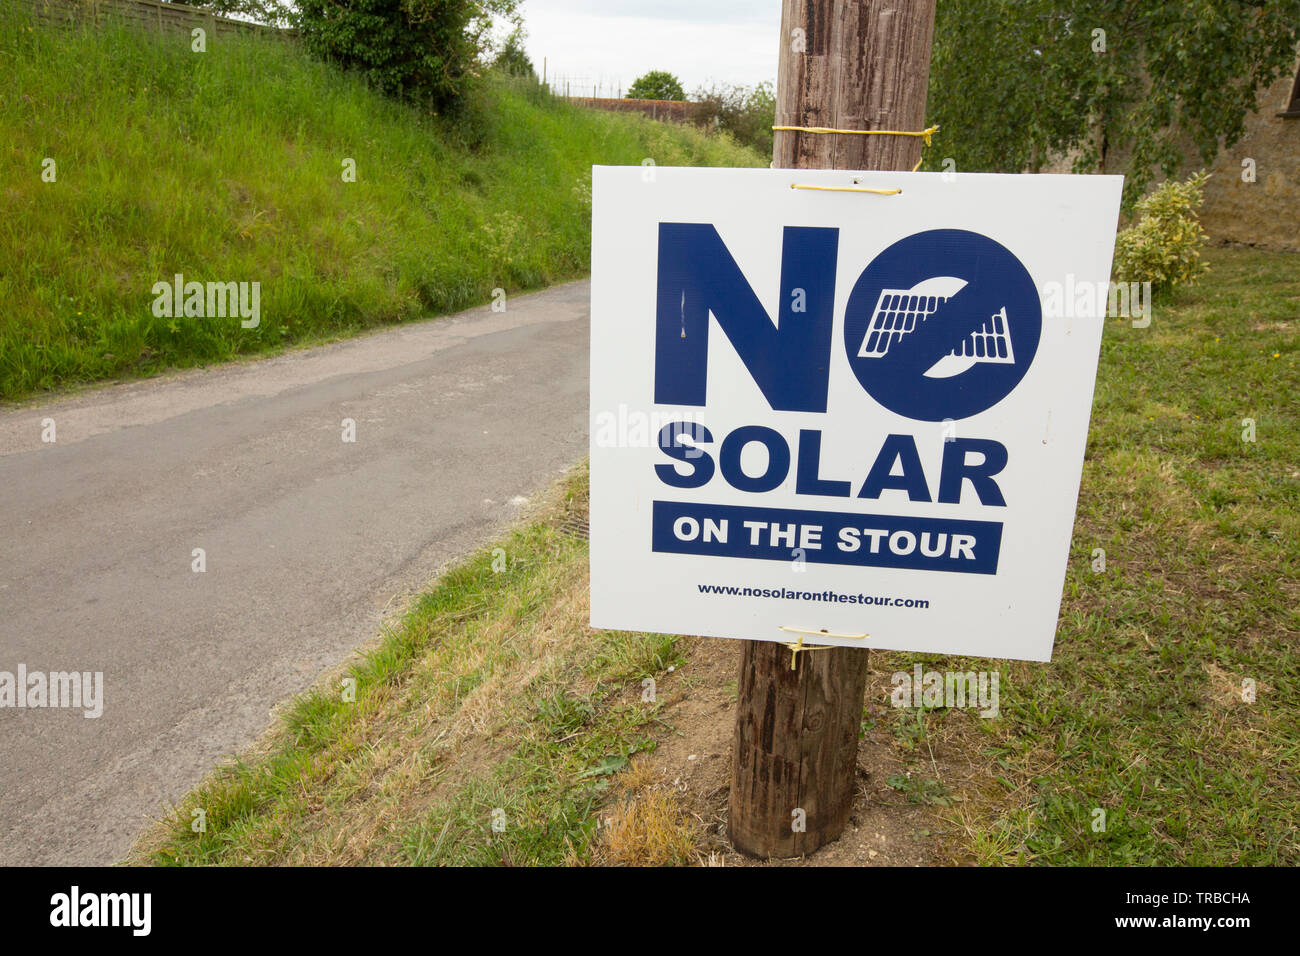 Un signe contraire à l'intention de construire une centrale solaire ferme/gare proche Stour Provost, Nord du Dorset England UK GO Banque D'Images